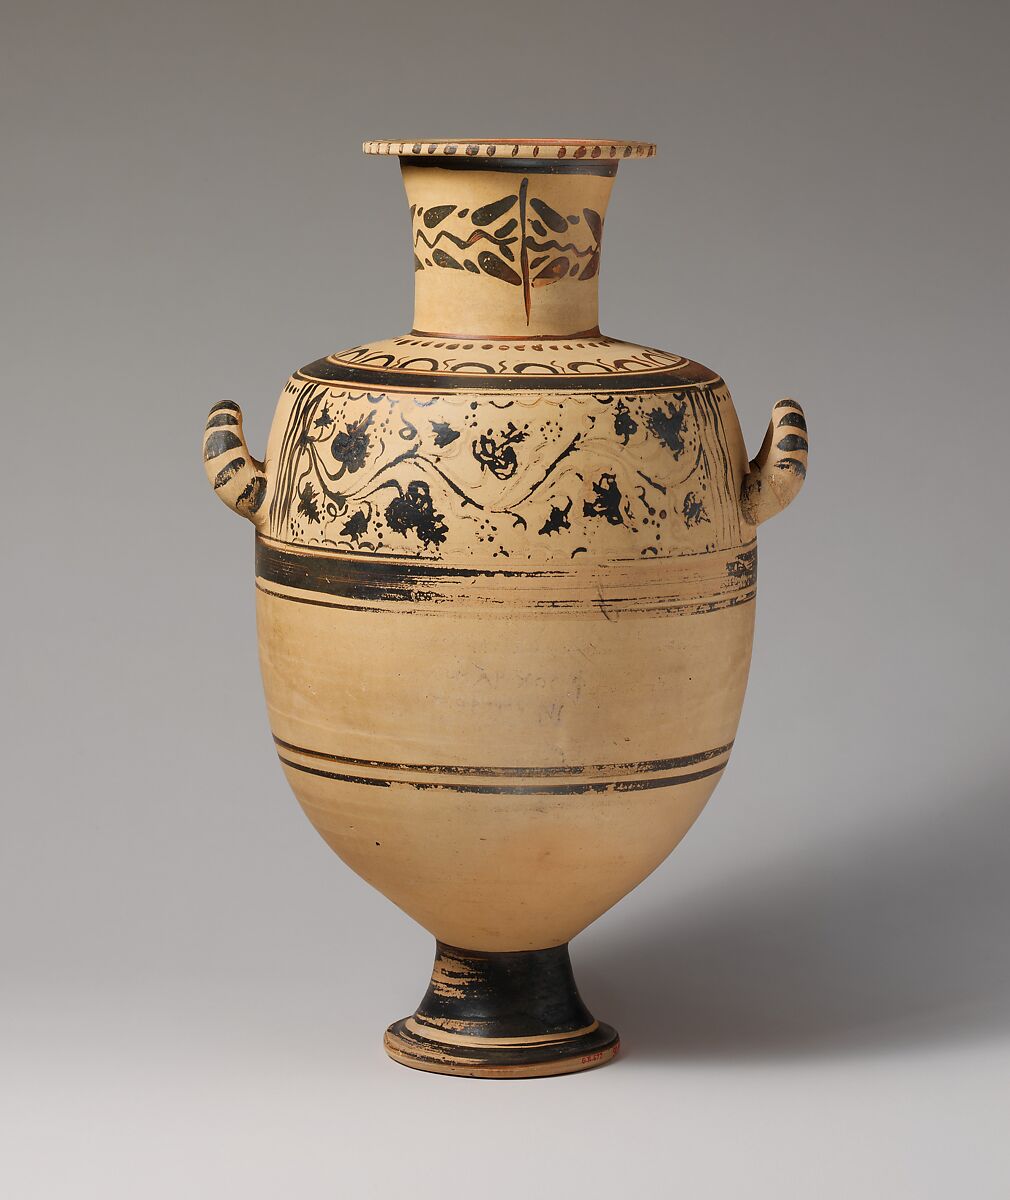 Terracotta Hadra hydria (water jar), Terracotta, Greek, Ptolemaic, Cretan